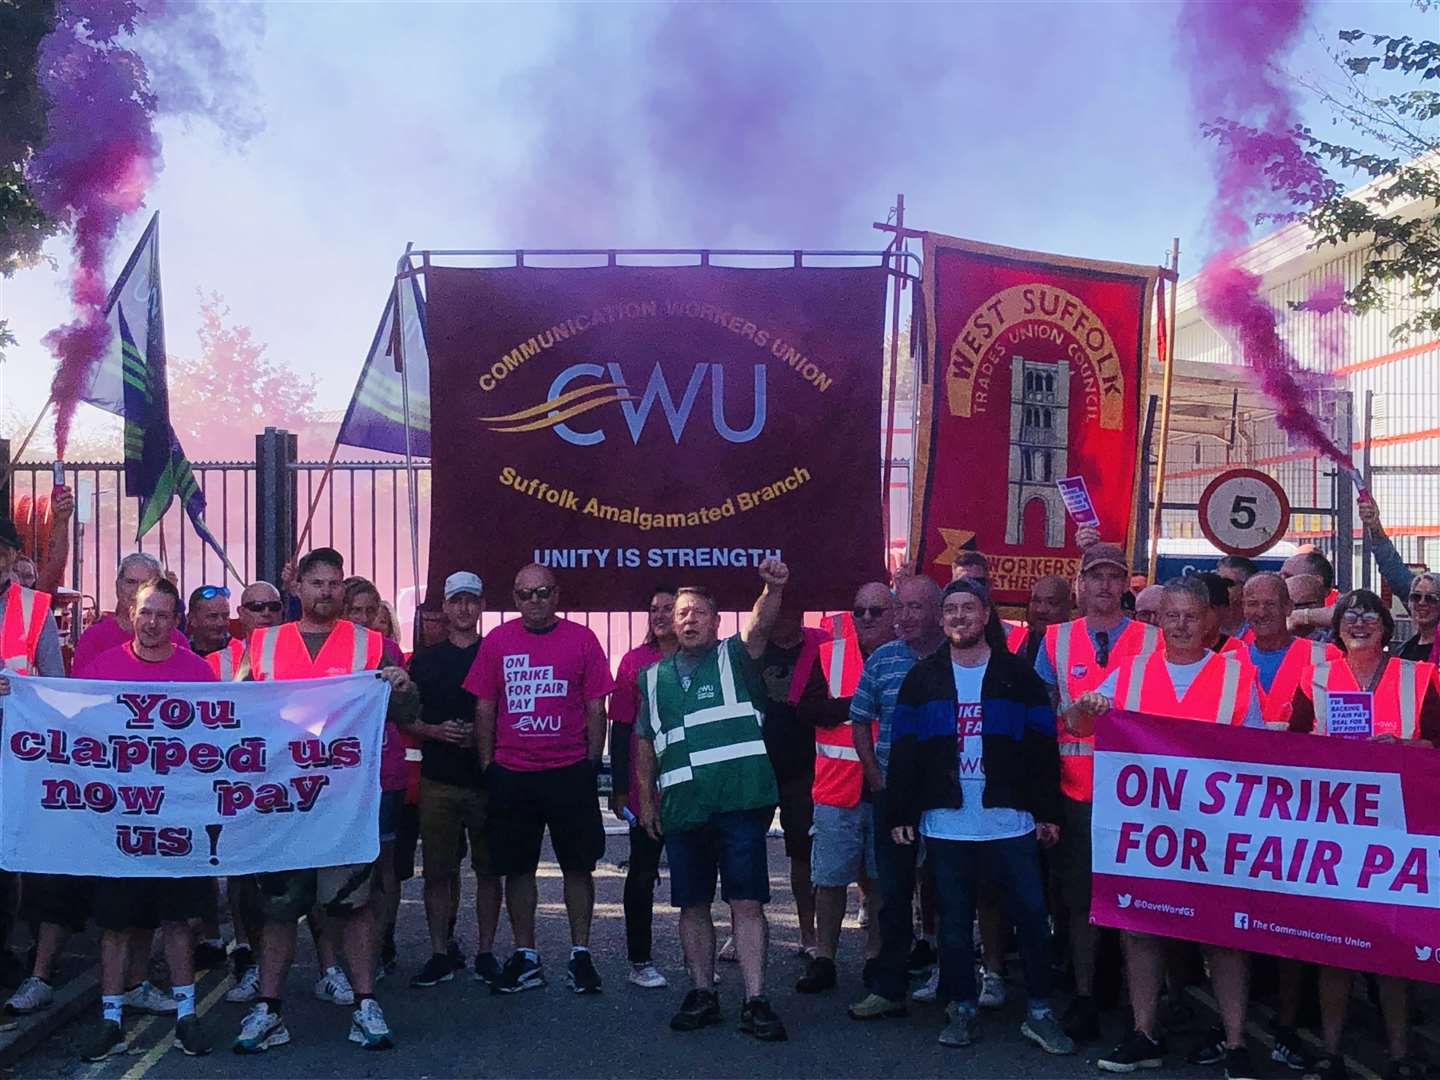 The CWU strike